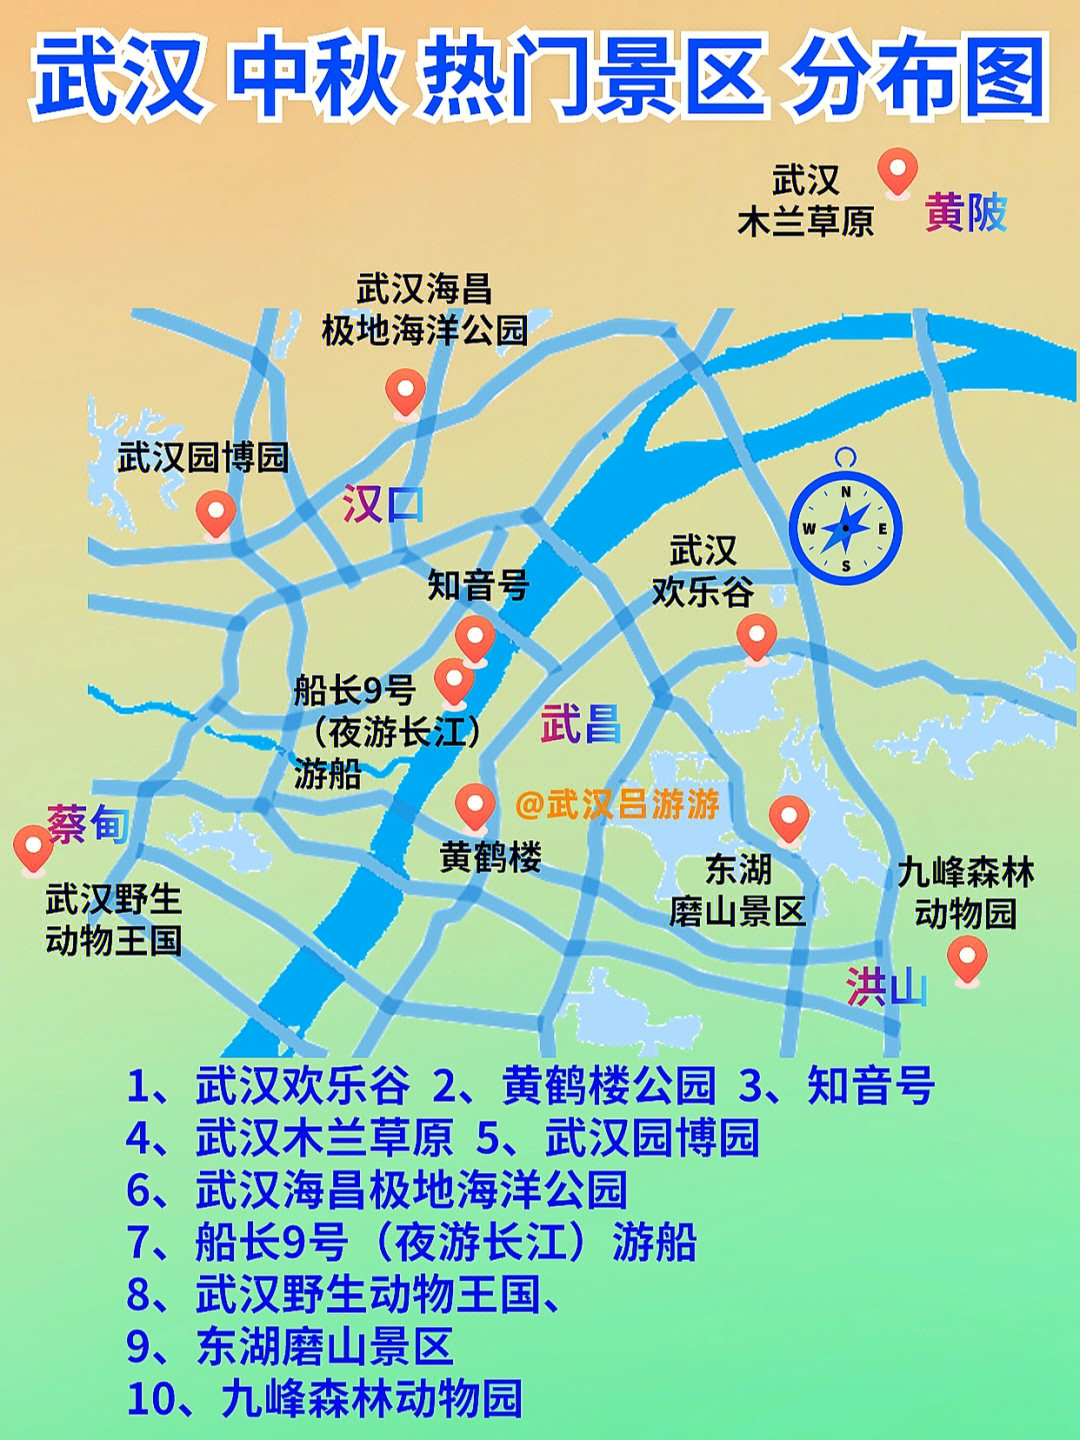 94今天,武汉各大官媒公布了湖北中秋热门景区,其中提到了武汉